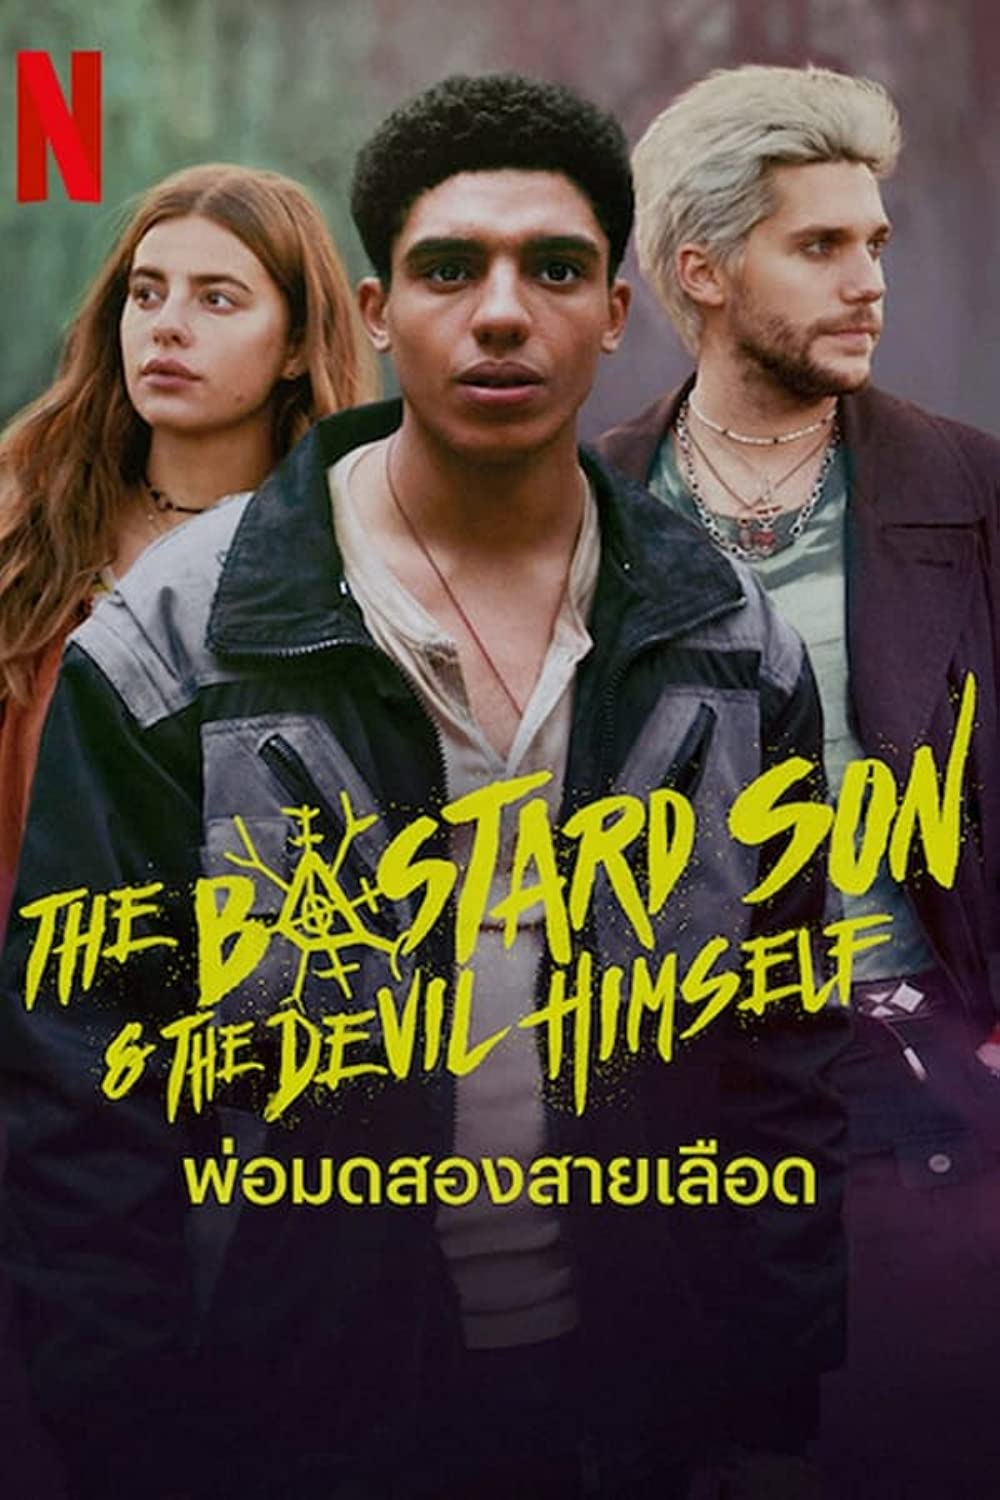 مسلسل The Bastard Son & The Devil Himself الموسم 1 الحلقة 8 والاخيرة مترجمة